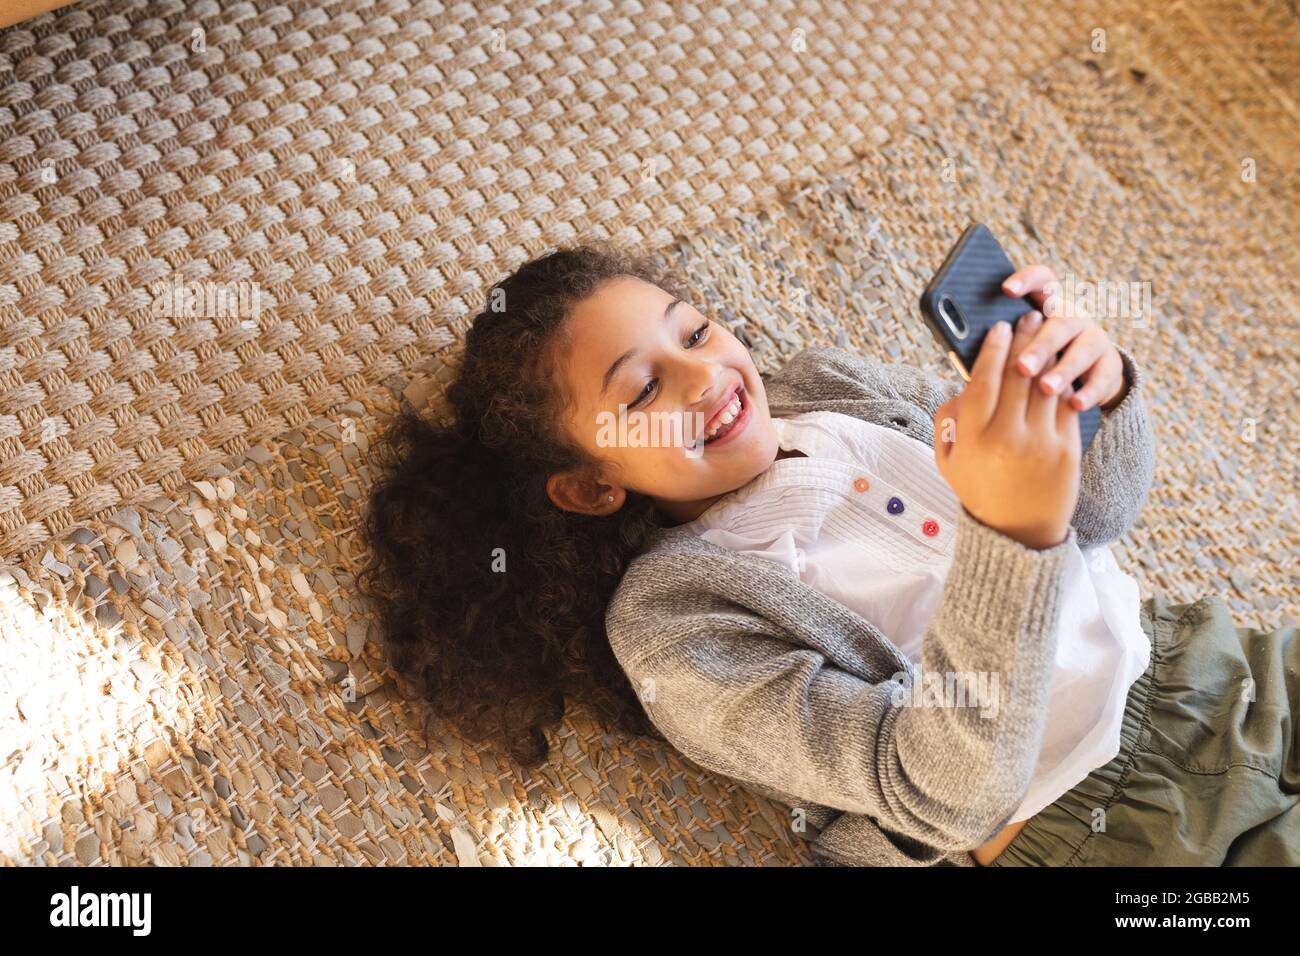 Lächelndes Mädchen mit gemischter Rasse, das mit dem Smartphone auf dem Teppich liegt Stockfoto